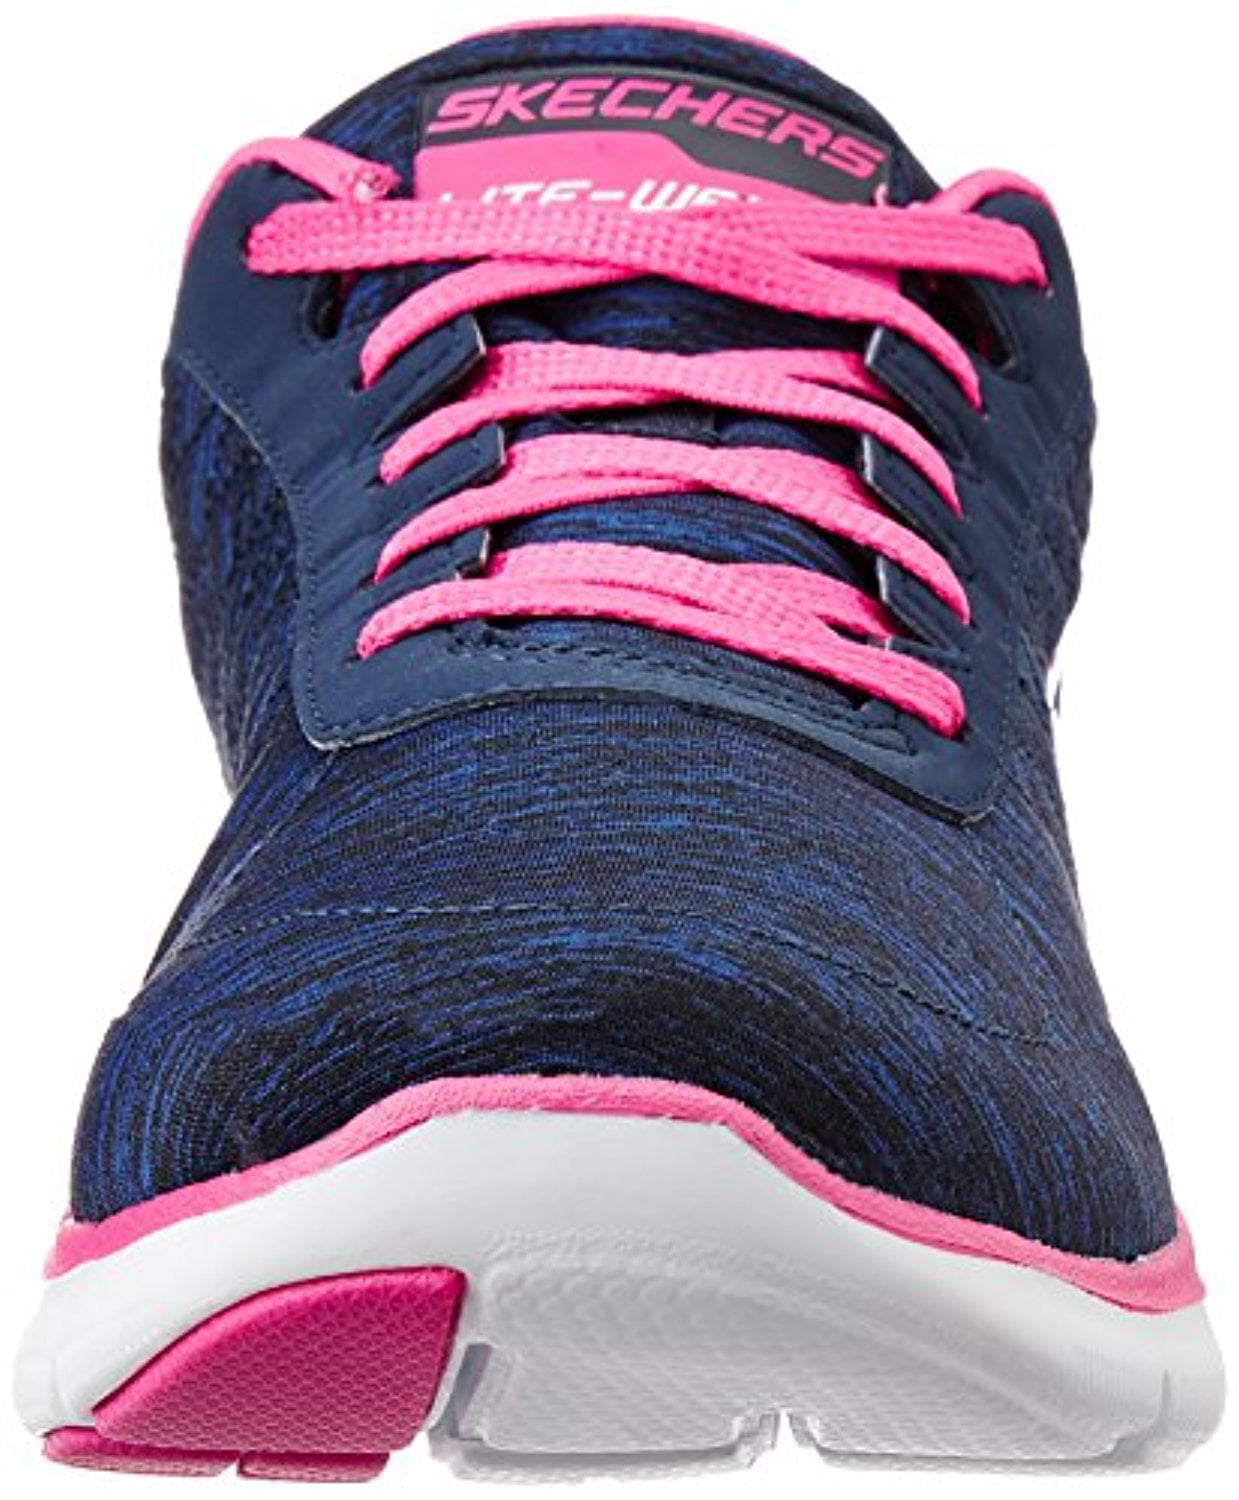 Moet Manifestatie stout Skechers Women's Flex Appeal 2.0 Fashion Sneaker, Navy Pink, 10 M US -  Walmart.com